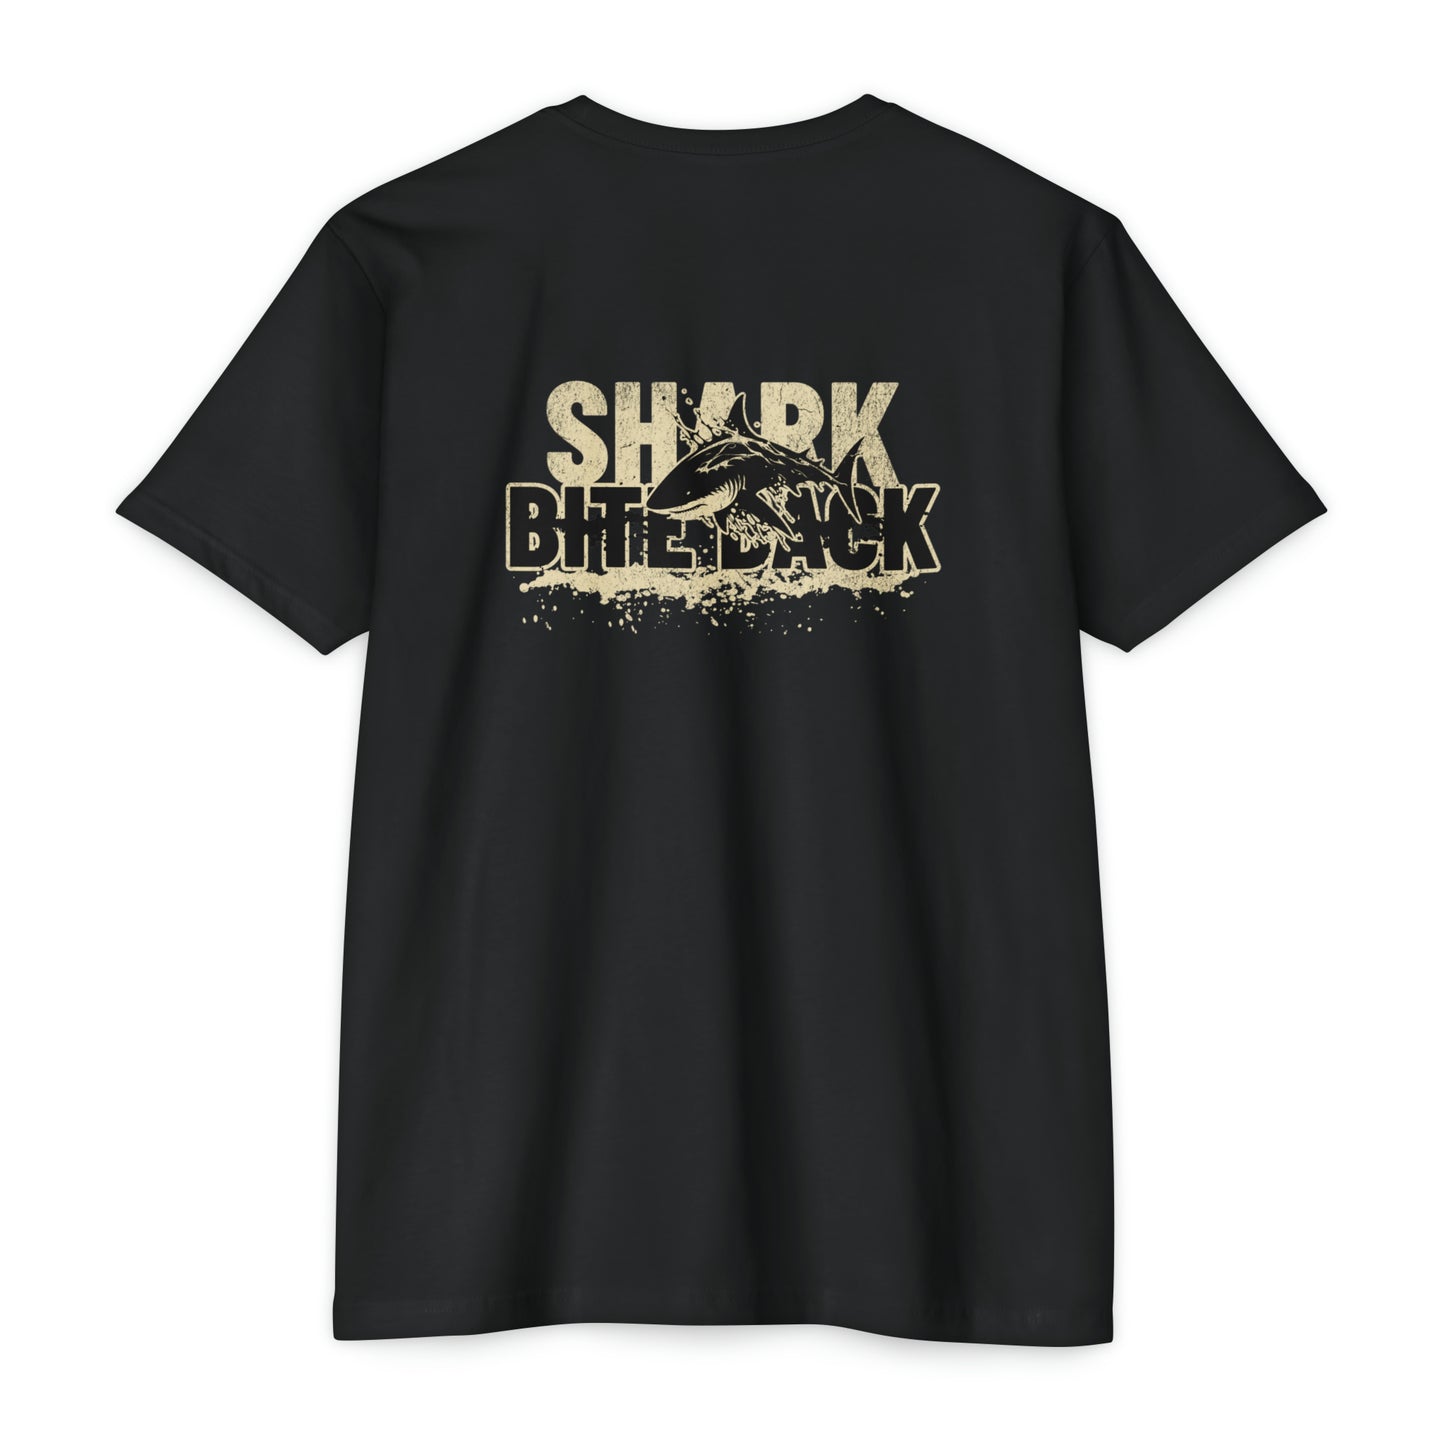 Shark Bite Back T-shirt